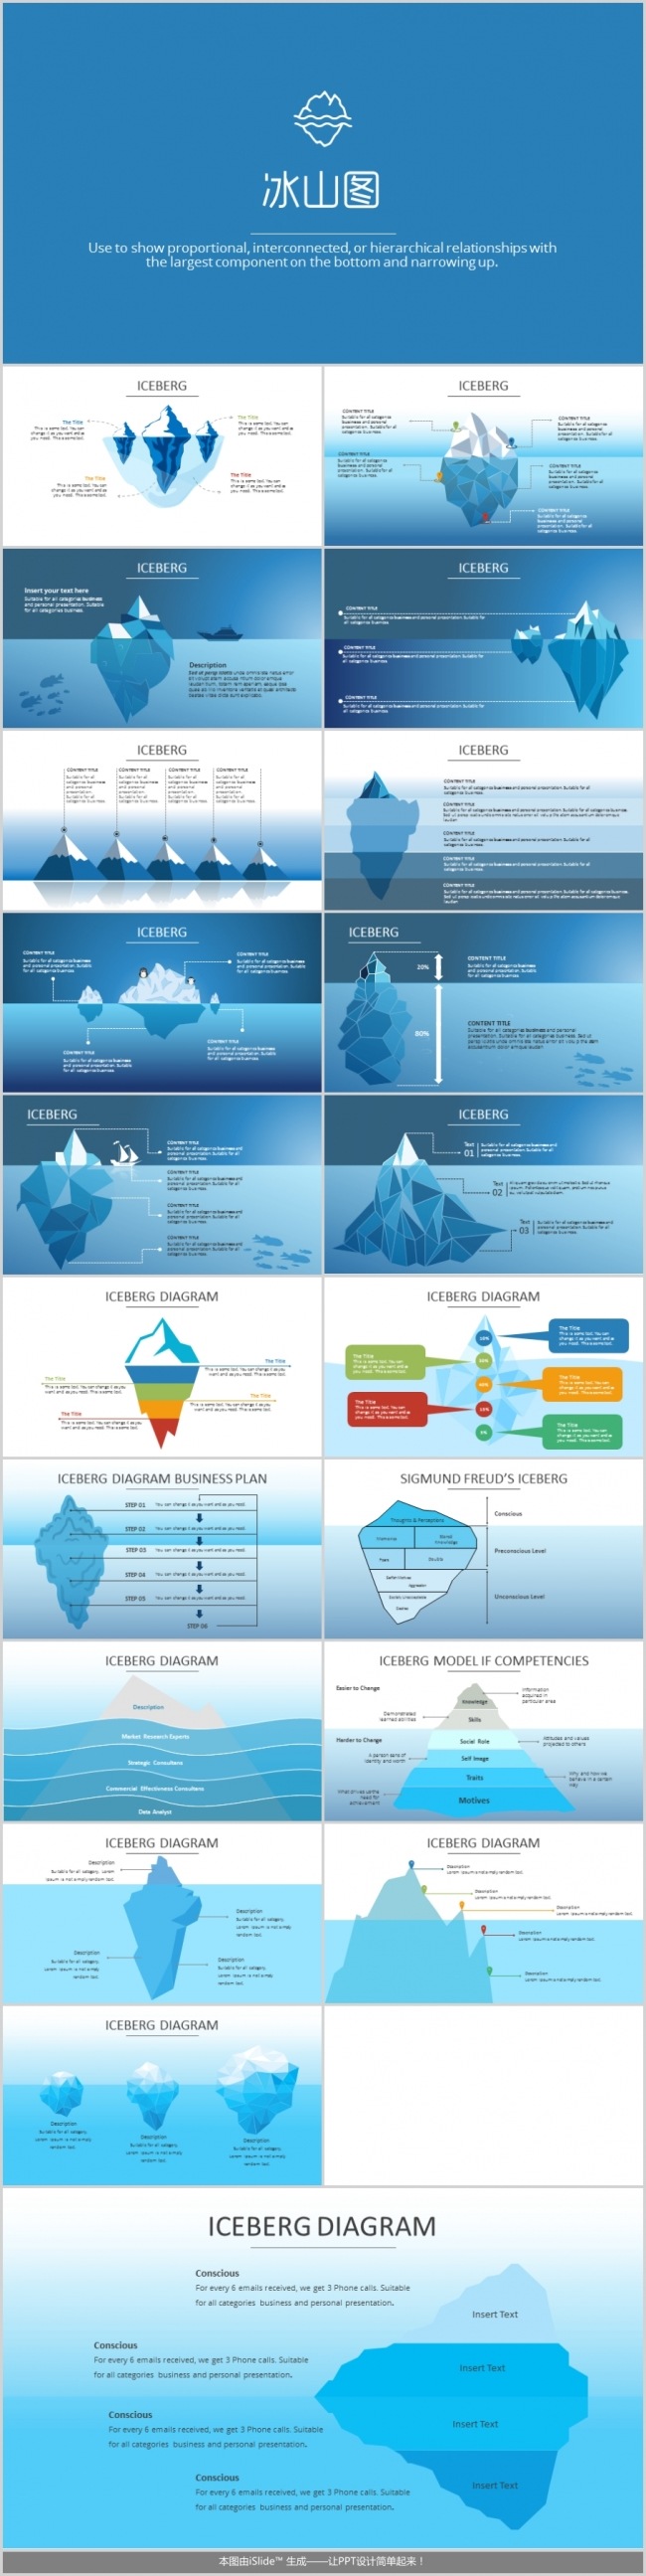 QCC品管圈专用图表详细冰山图冰山理论冰山模型